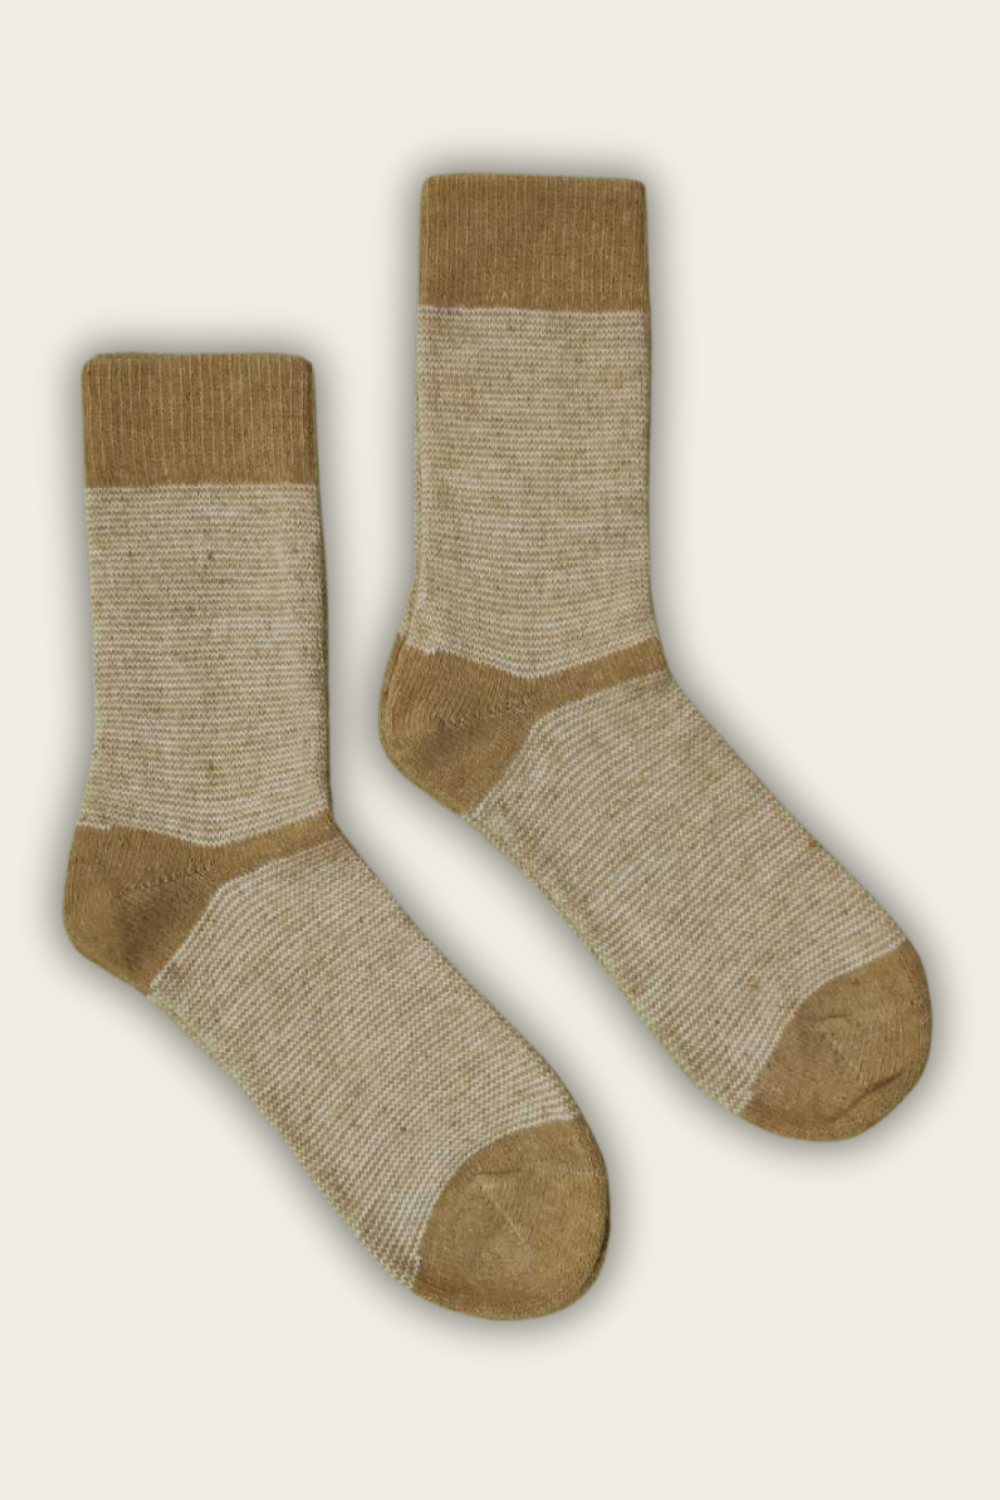 Socks with Alpaca and Merino Wool - dark yellow - 2 pairs